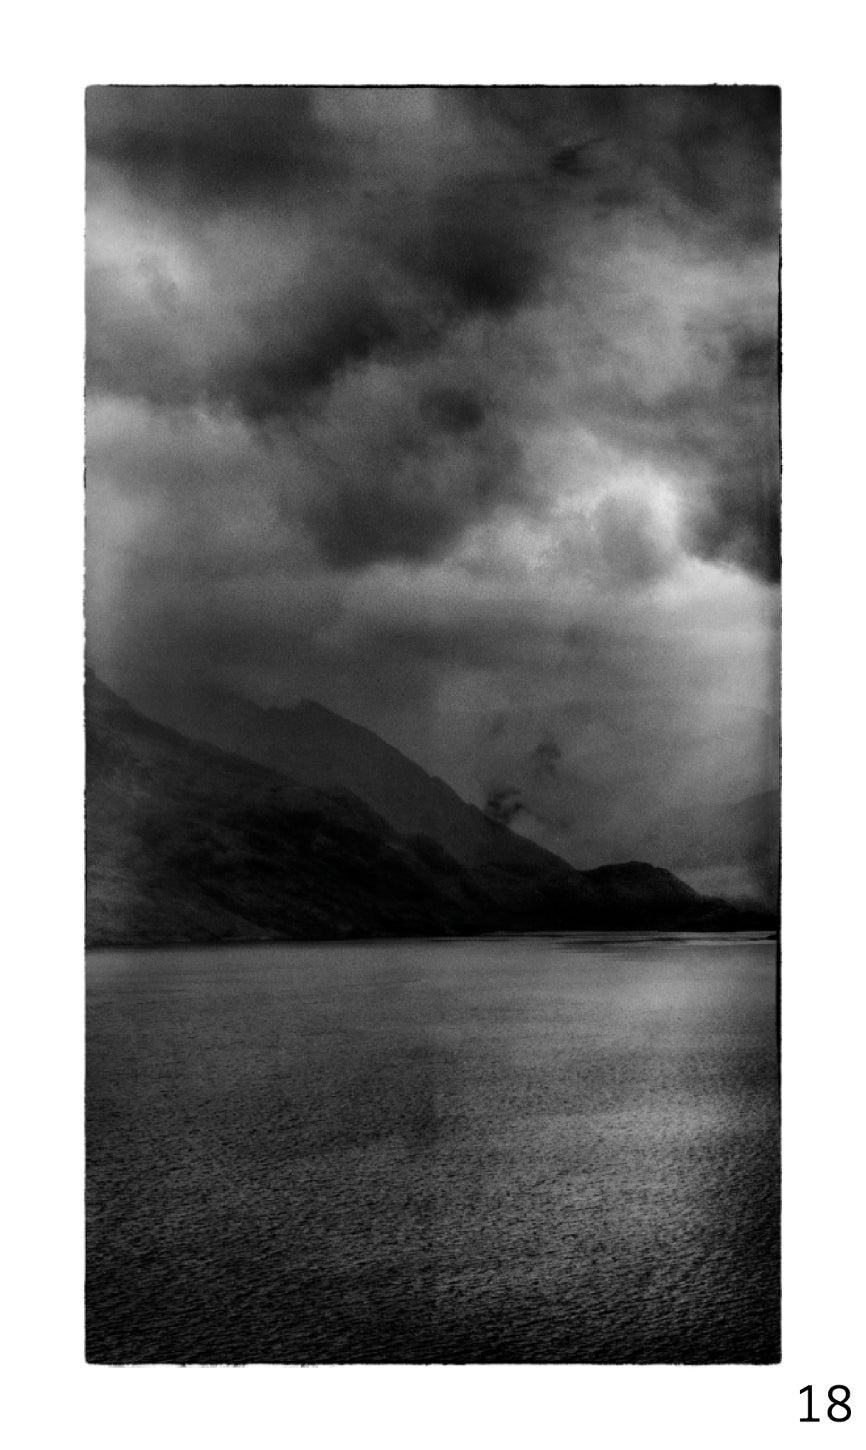 Guy Dickinson A Shadow Passes A2 print (SKYE_18) at Bard Scotland.